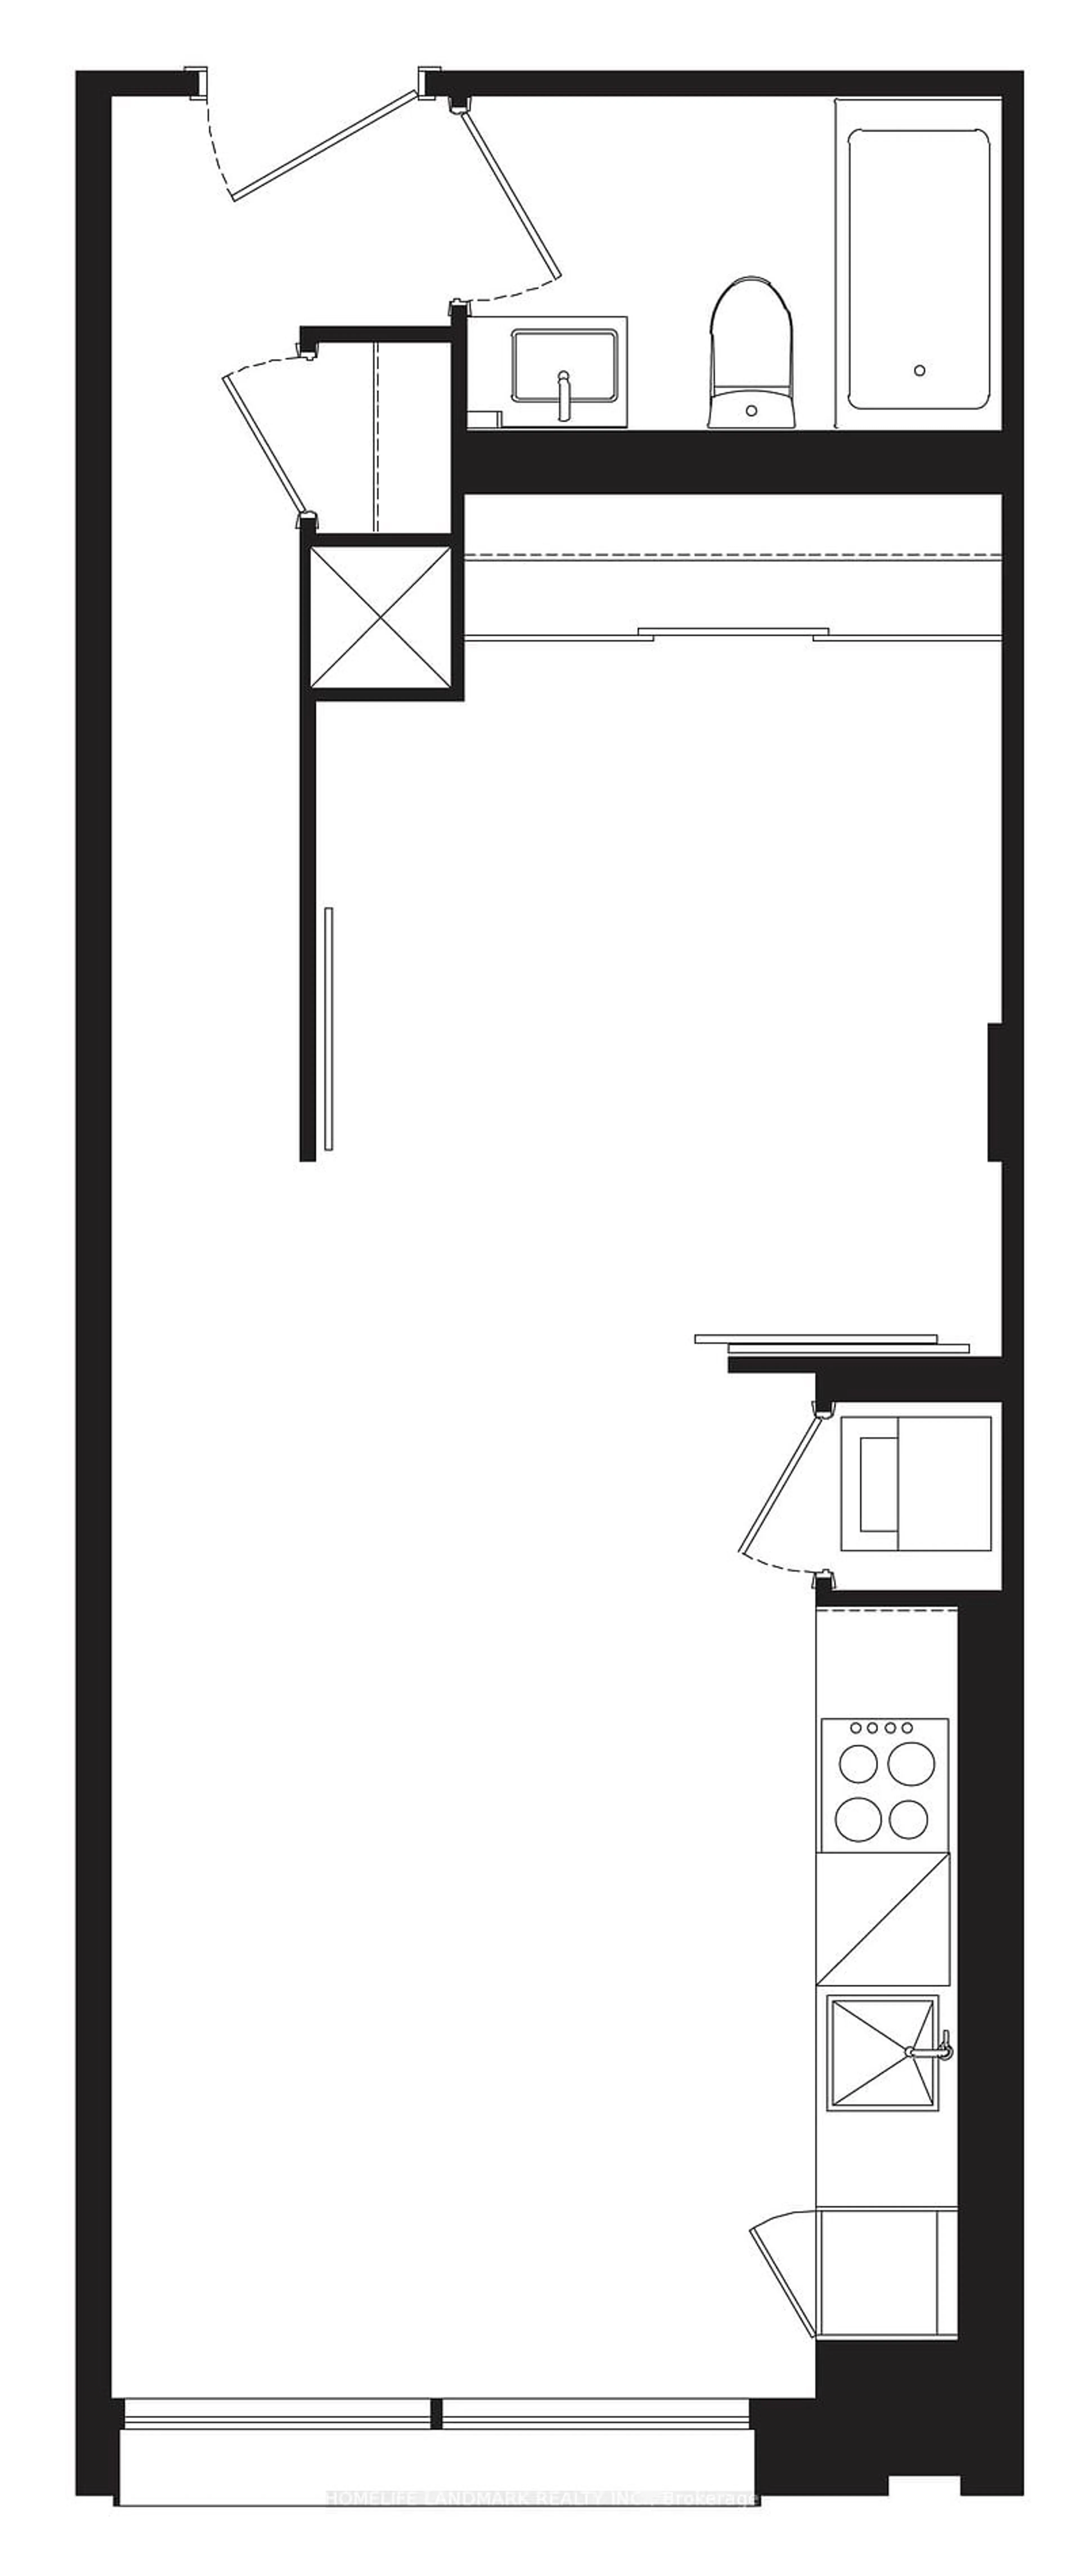 Floor plan for 55 Mercer St #319, Toronto Ontario M5V 0W4